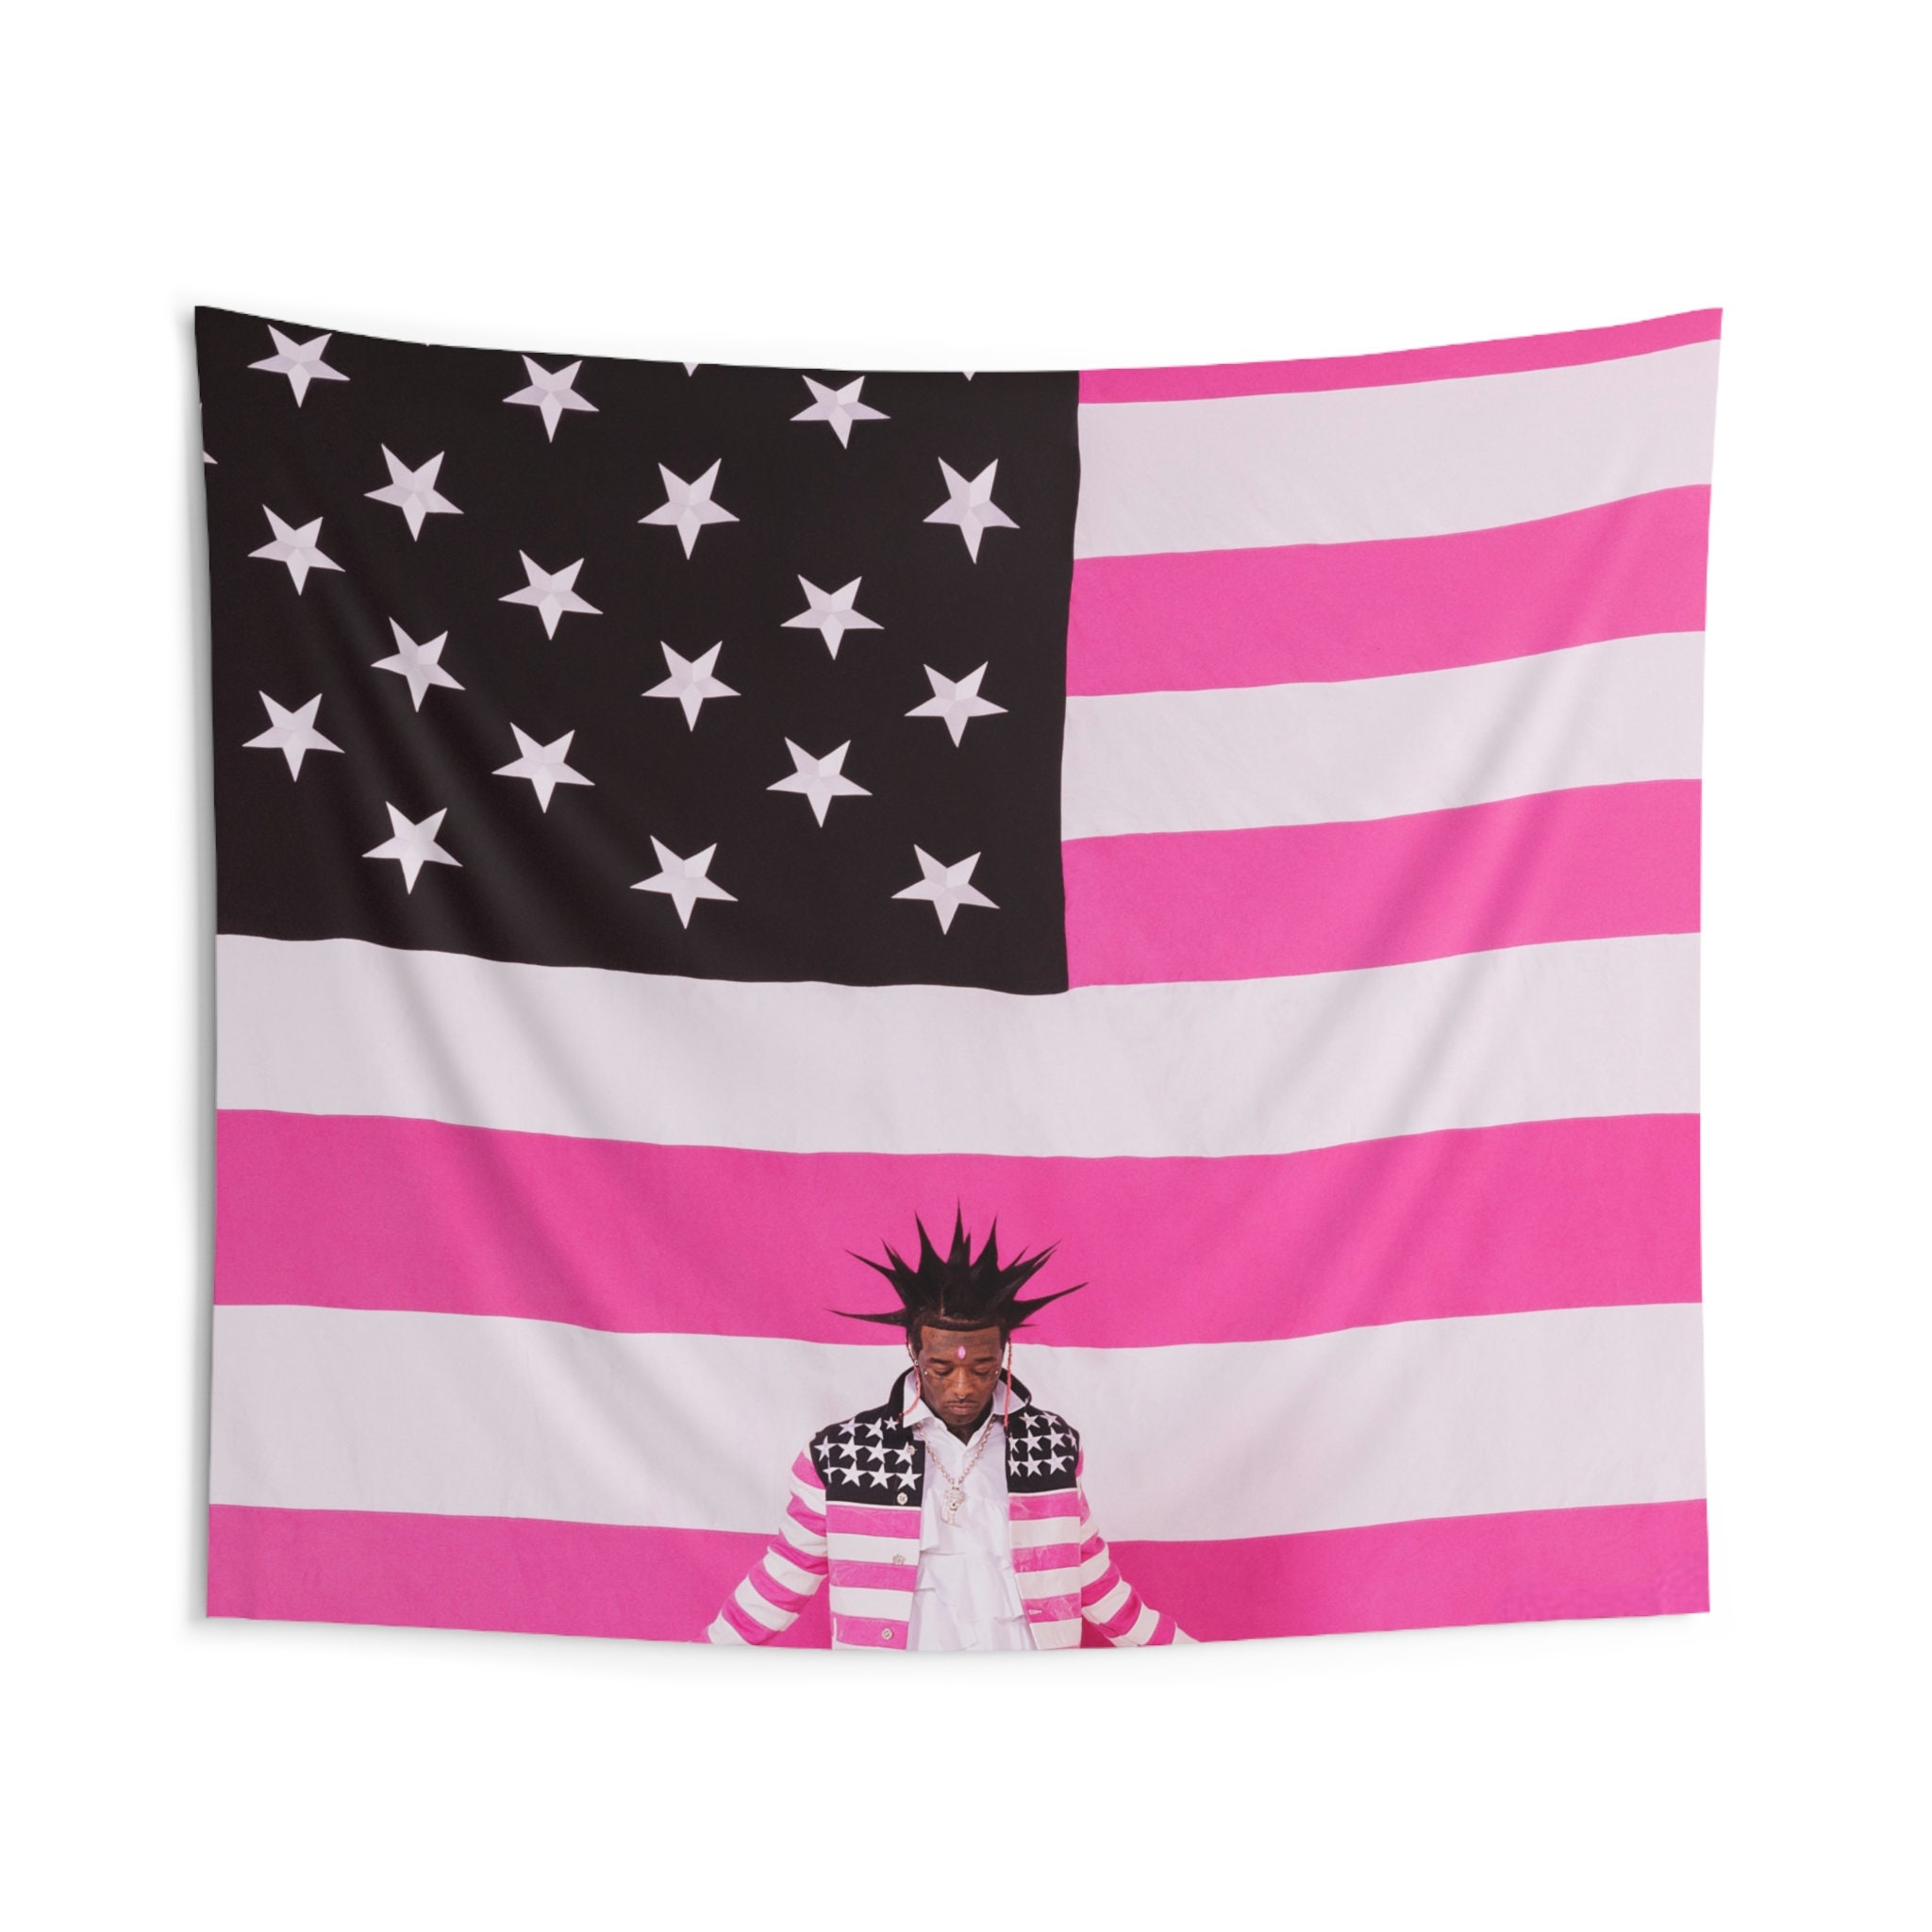 Lil Uzi Vert's Pink Tape Fan art, Lil Uzi Vert's Pink Tape